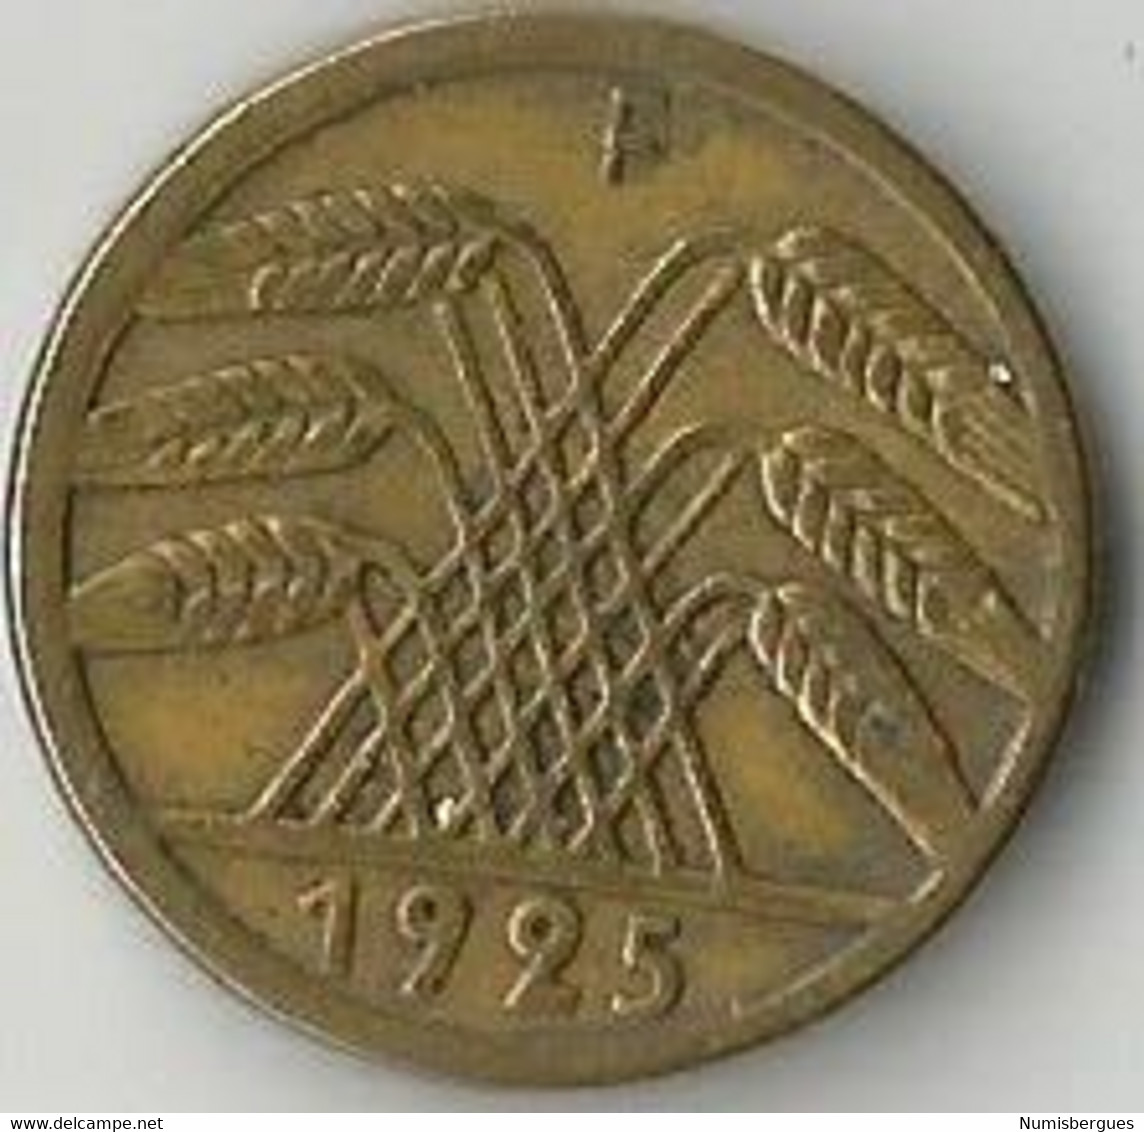 Pièce De Monnaie  5 Reichspfennig 1925 F - 5 Rentenpfennig & 5 Reichspfennig